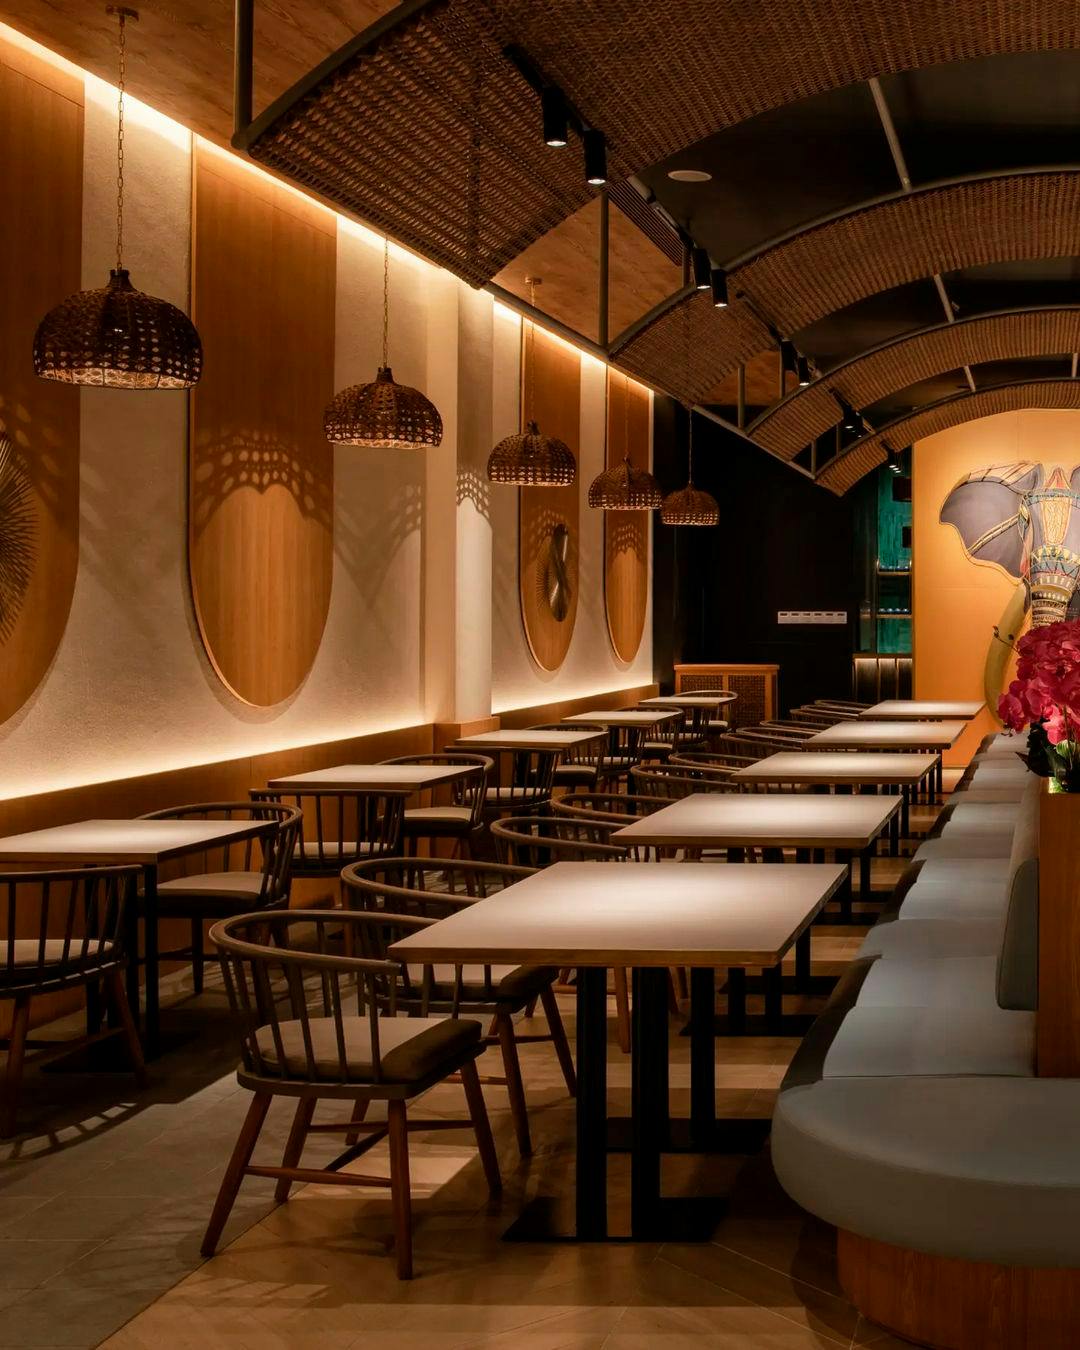 Imagen número 79 de Burnside, el restaurante de moda en Tokio que convierte la gastronomía en experiencias inmersivas culinarias